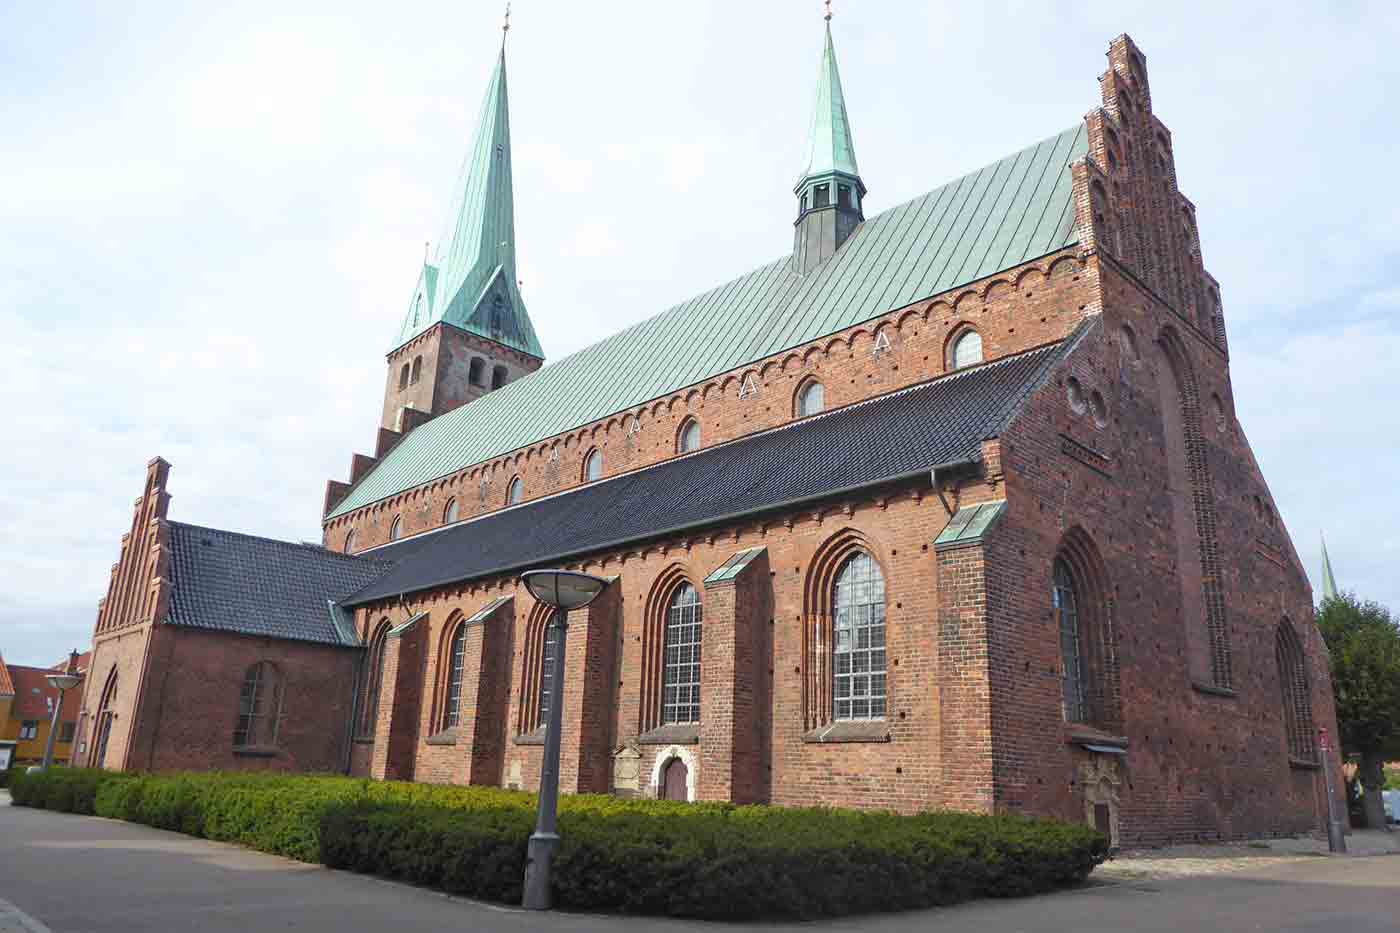 St. Olaf’s Church